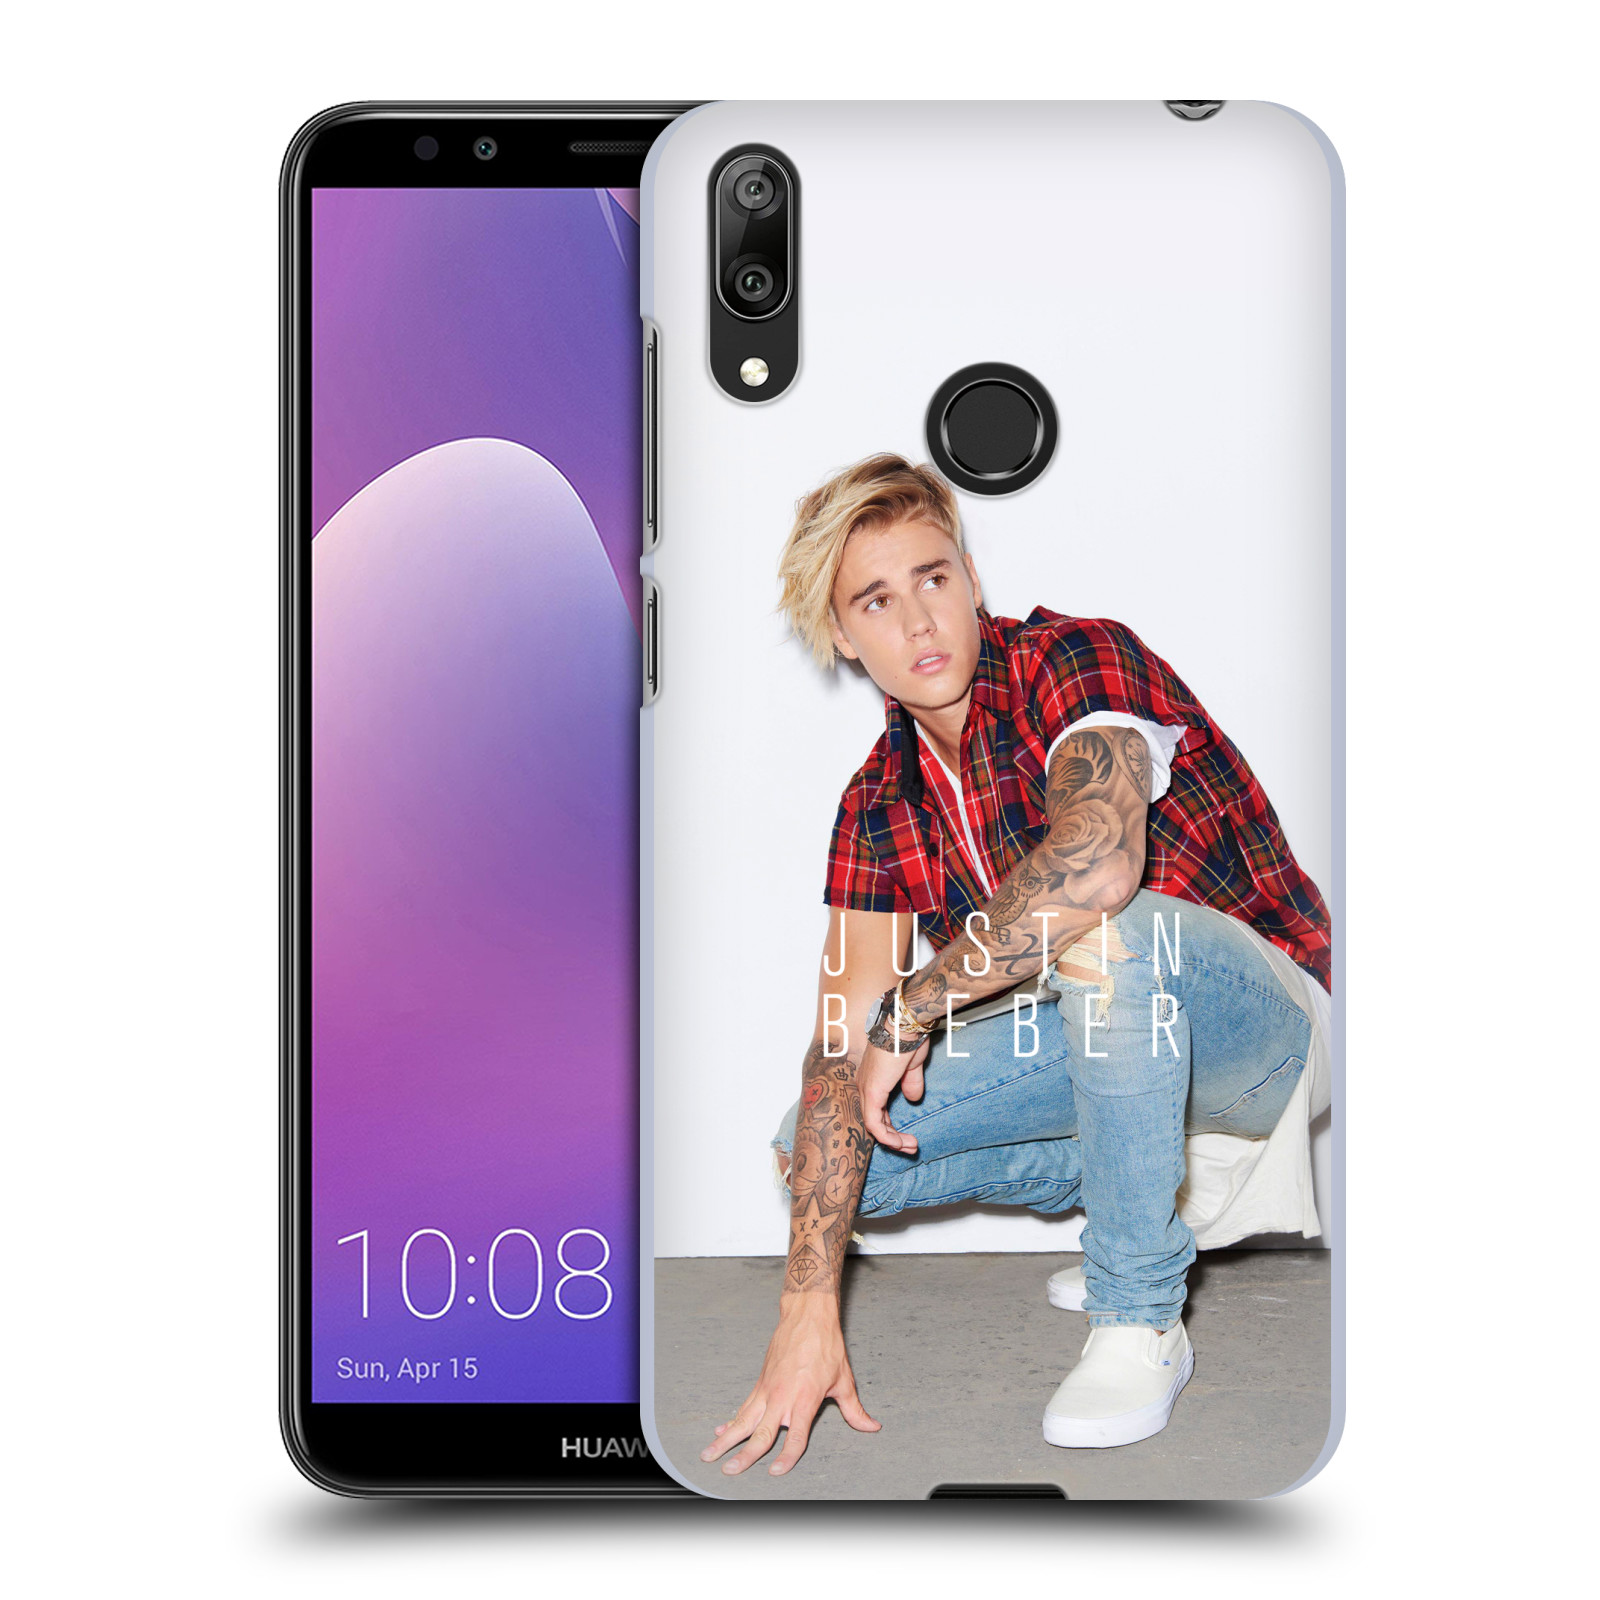 Pouzdro na mobil Huawei Y7 2019 - Head Case - Justin Bieber foto Purpose tour kalendář